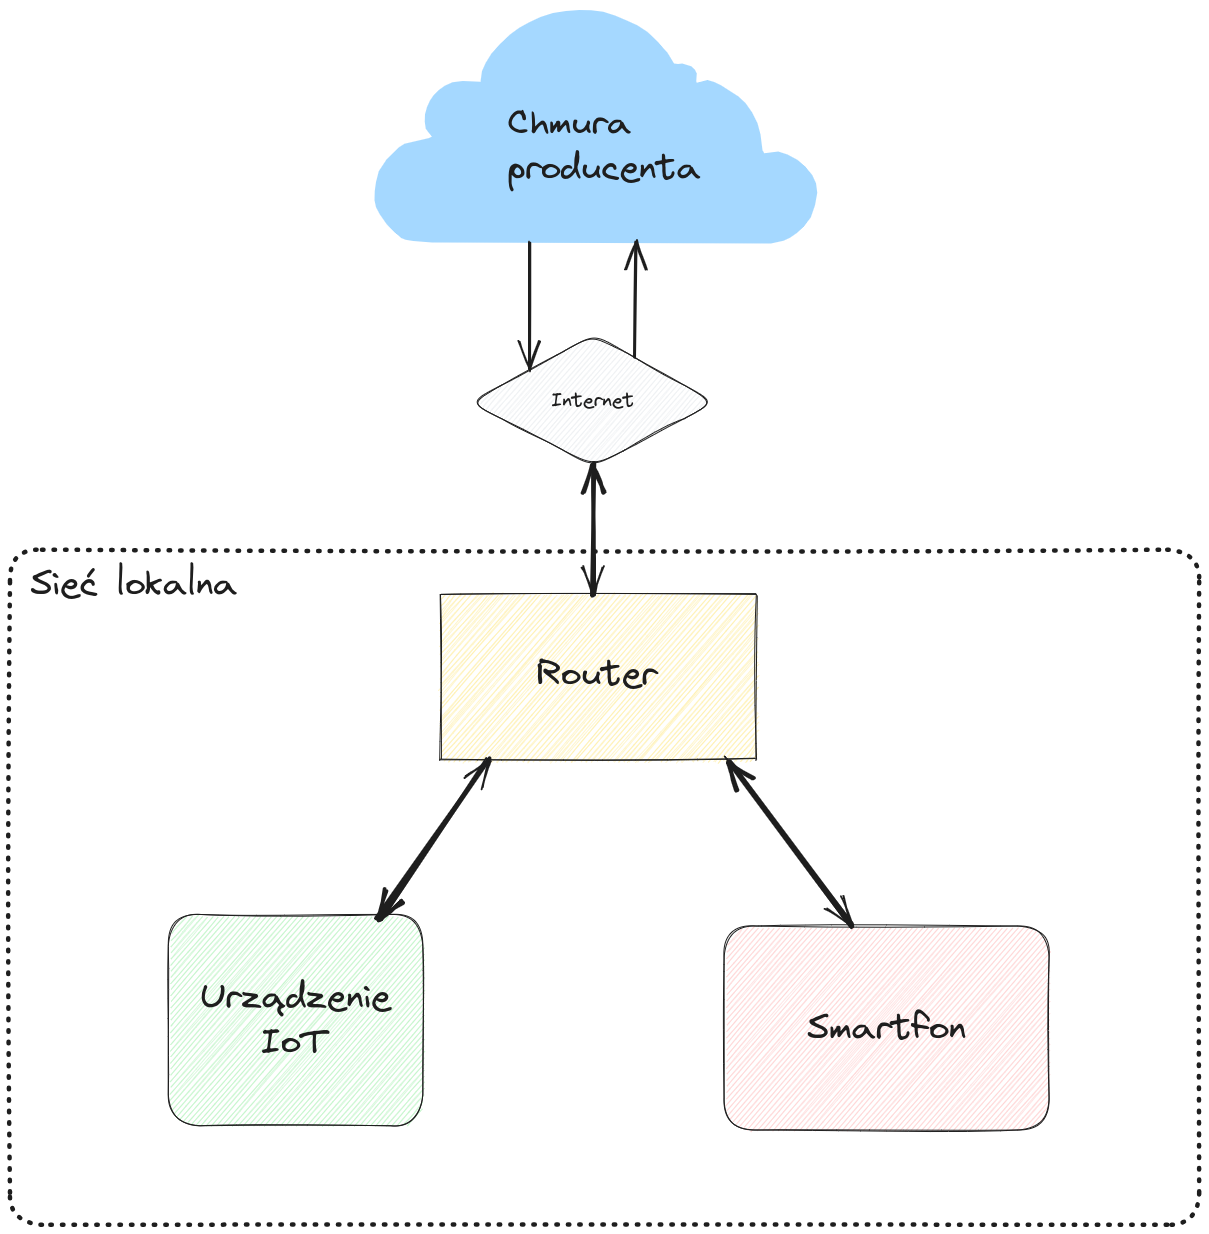 Uproszczony diagram ukazujący schemat działania urządzeń IoT opartych o chmurę